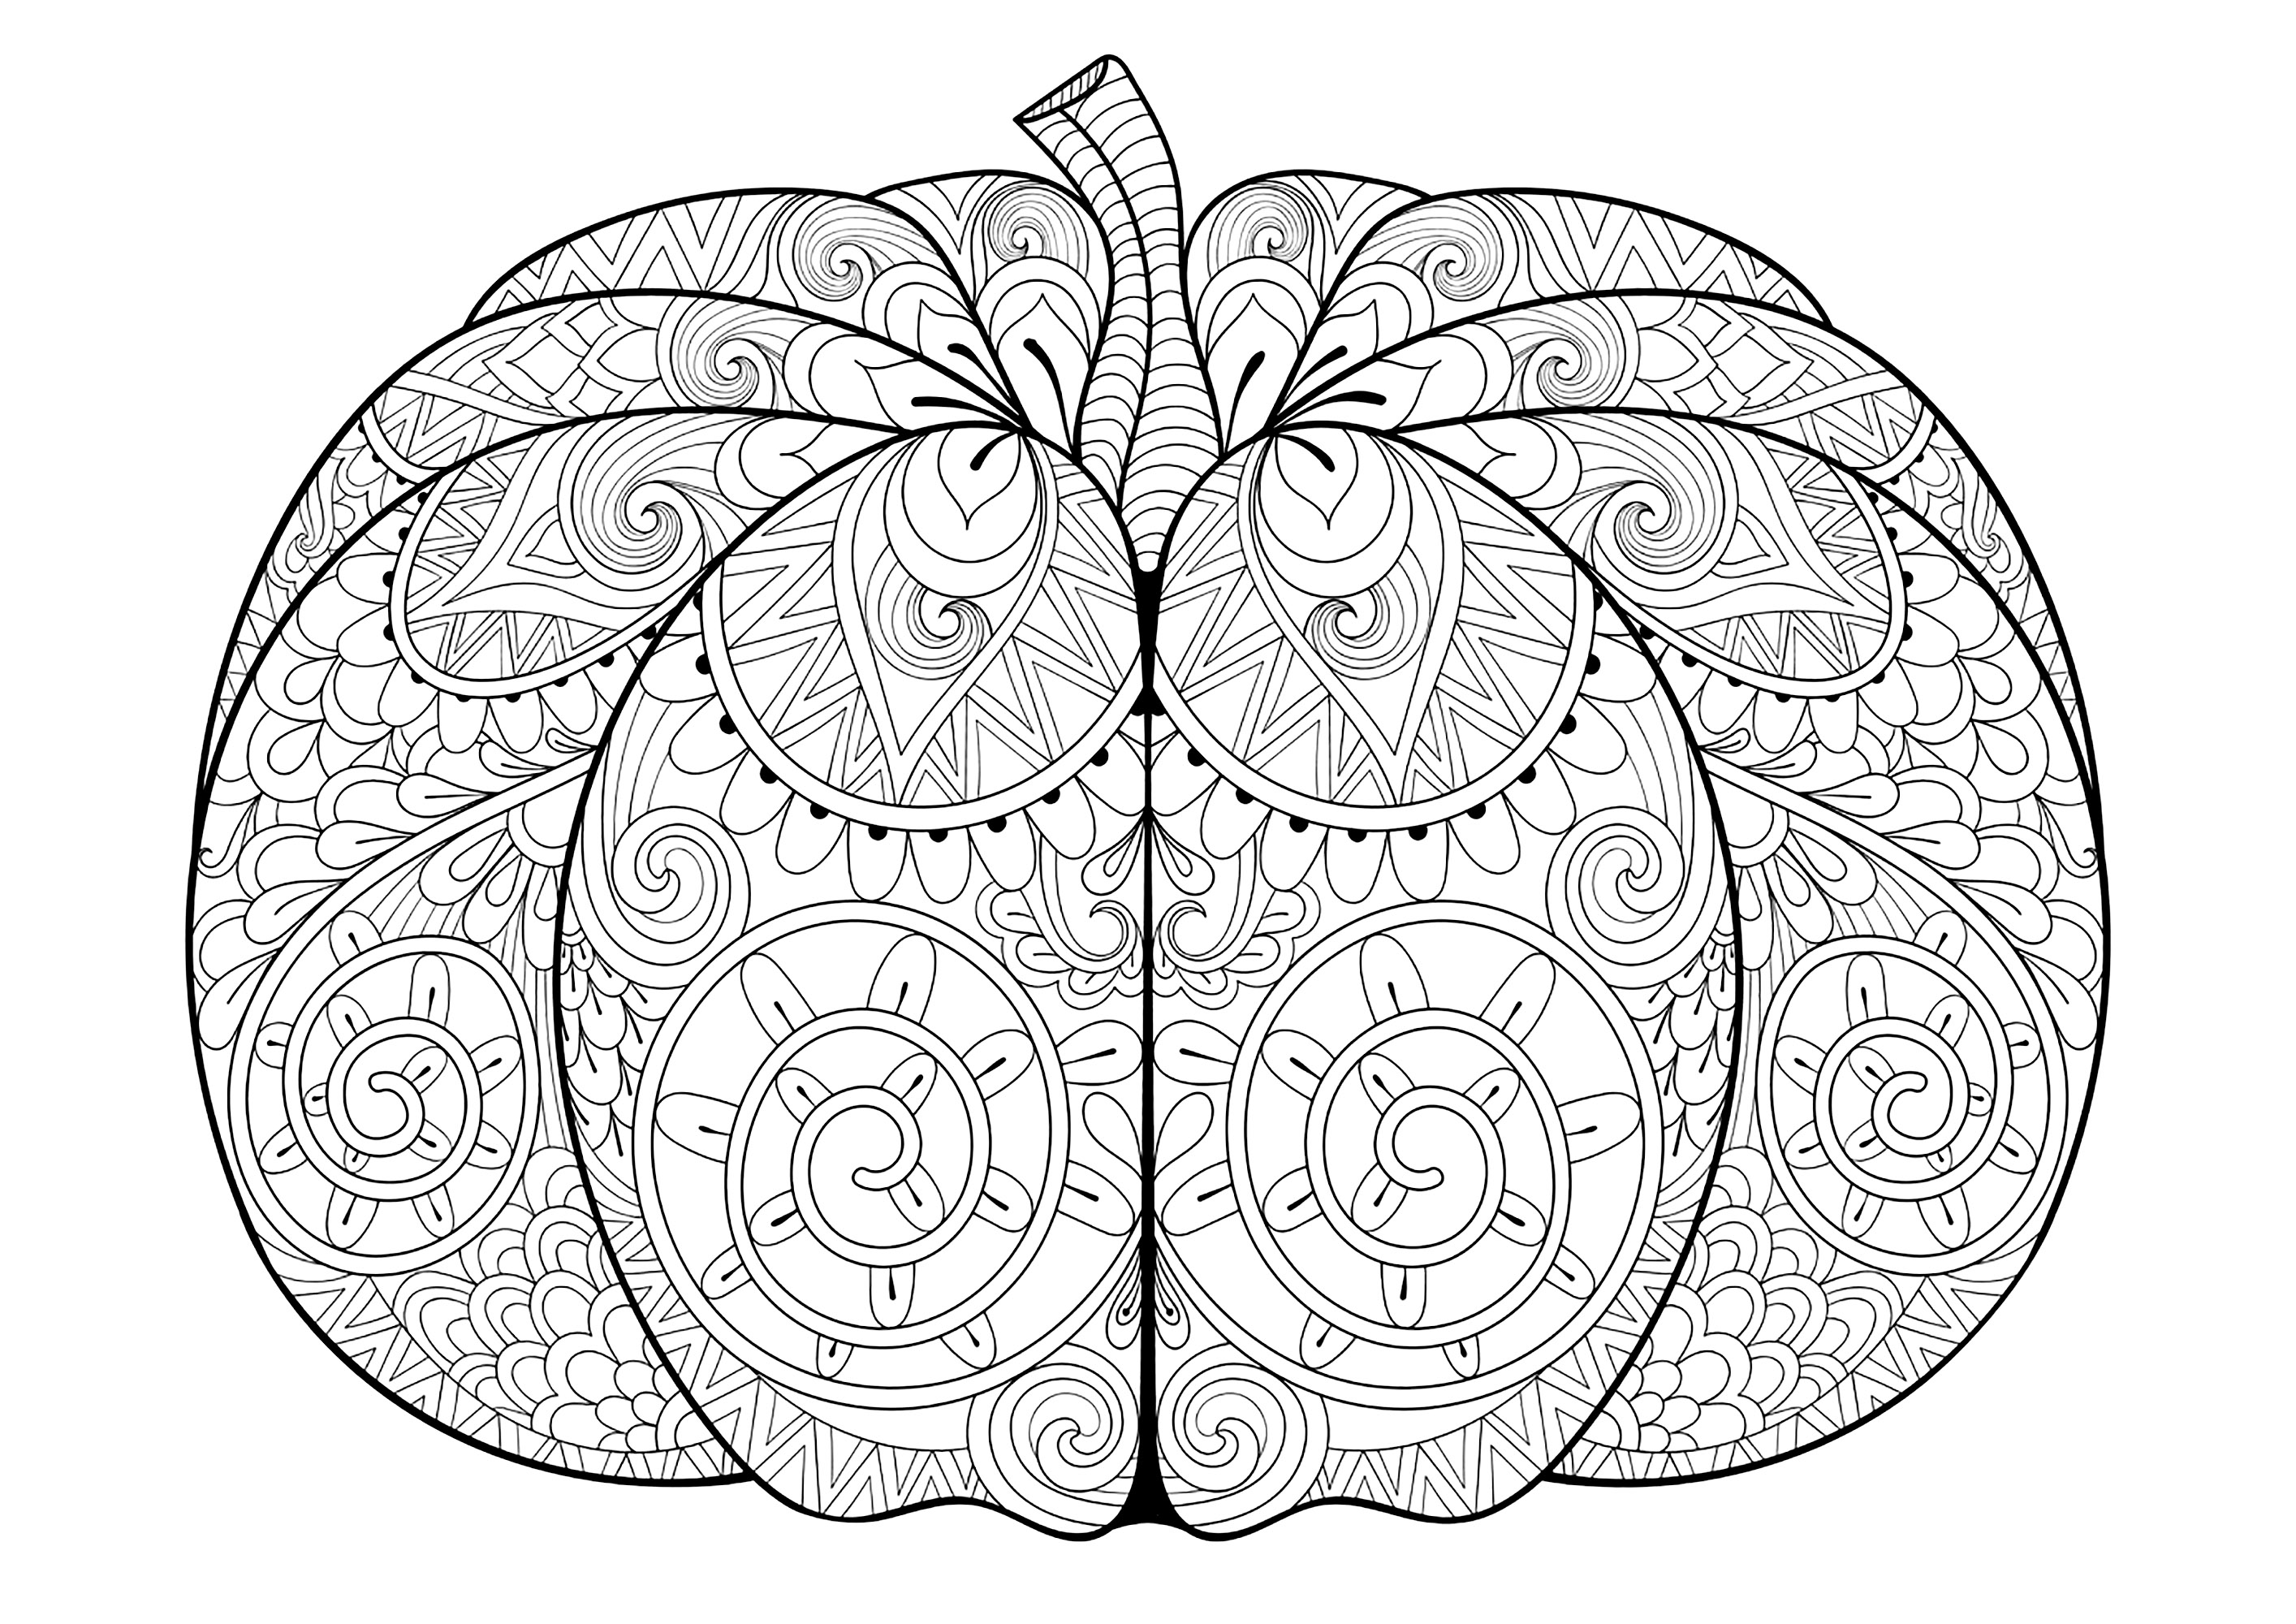 Zucca grande di Halloween. Colorate tutti i disegni intricati e variegati delle zucche, Fonte : 123rf   Artista : Ipanki